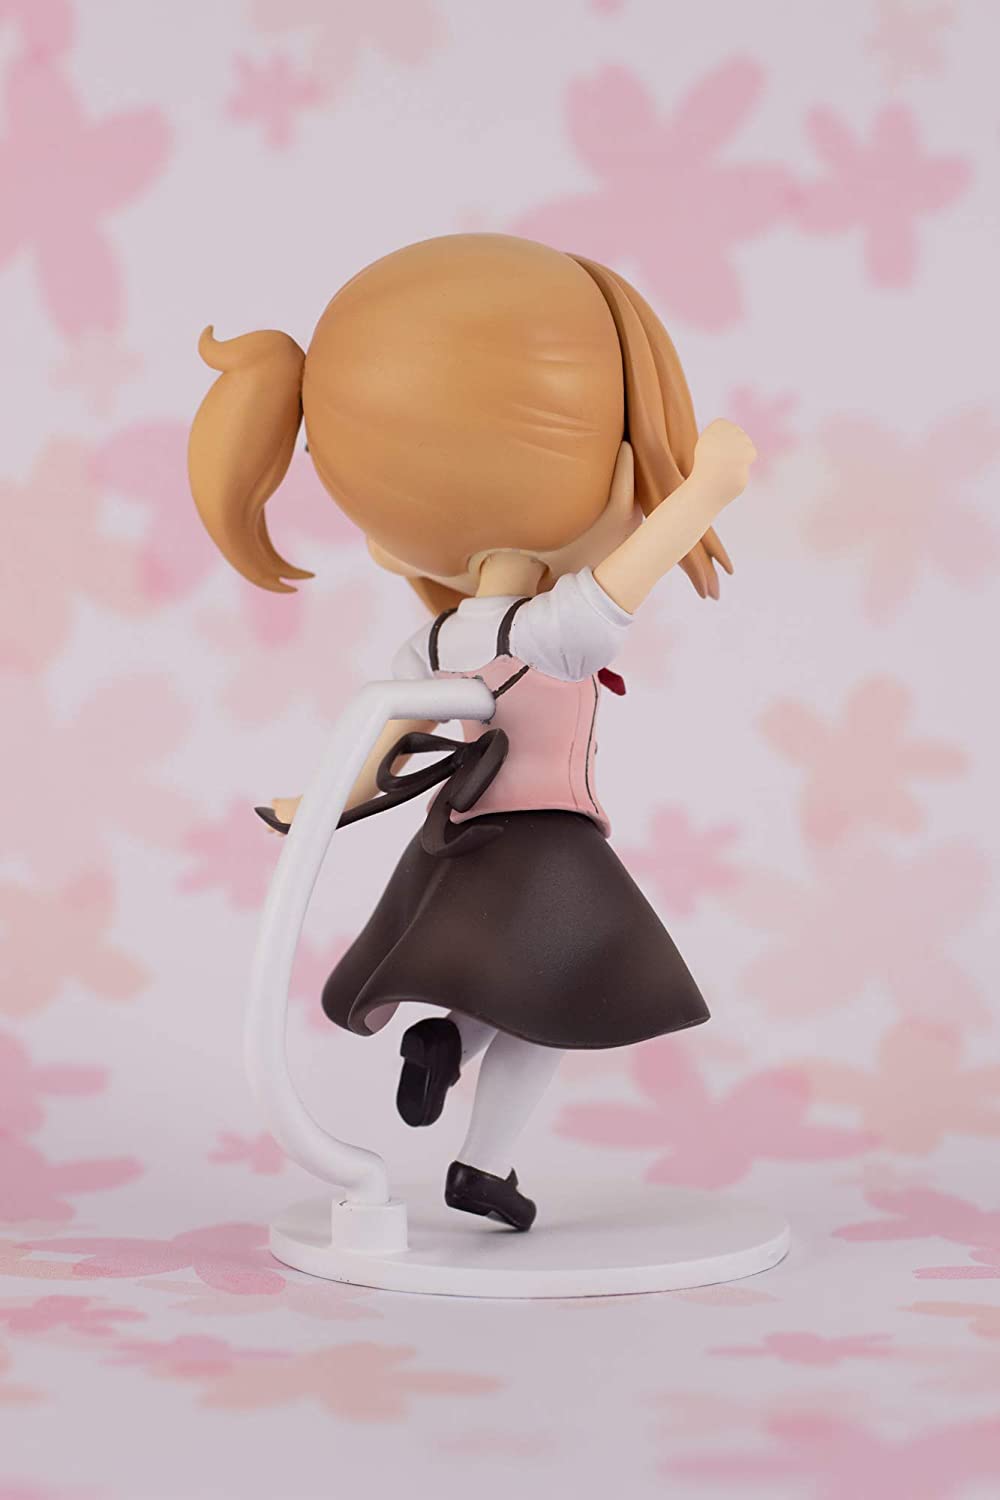 Plum is The Order a Rabbit?: Cocoa Non-Scale Mini PVC Figure Super Anime Store 